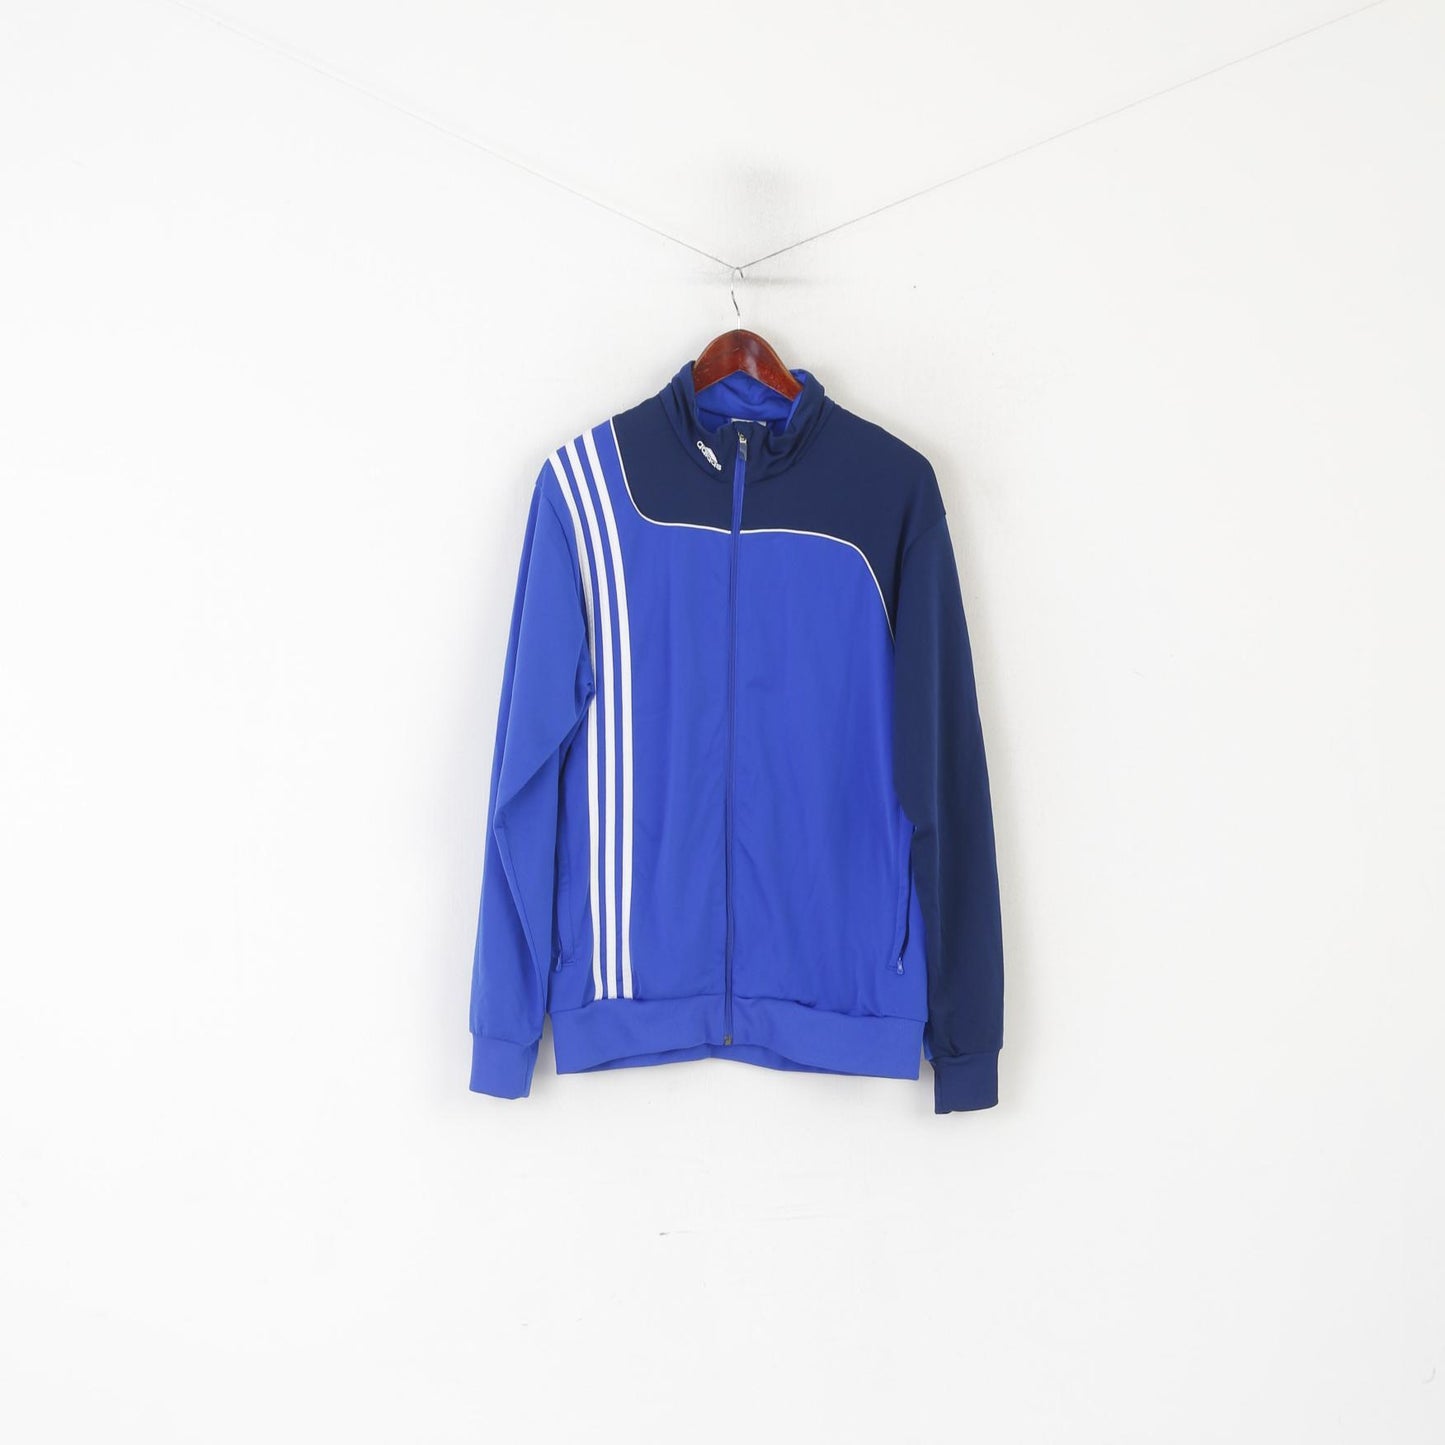 Adidas Hommes 42/44 L Sweat Bleu Brillant Vintage Pleine Fermeture Éclair Sport Traning Top